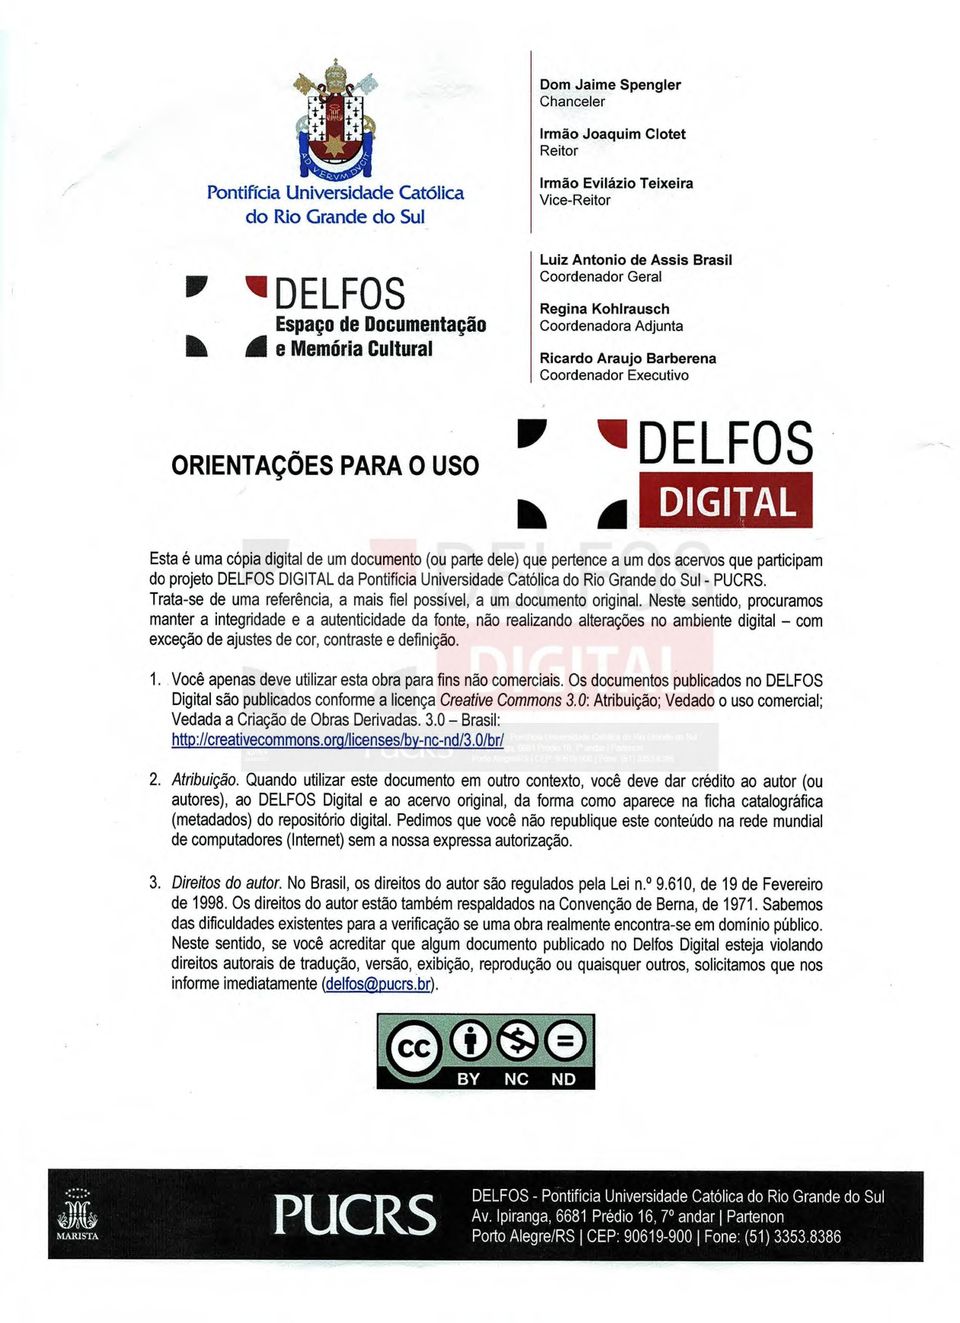 digital de um documento (ou parte dele) que pertence a um dos acervos que participam do projeto DELFOS DIGITAL da Pontifícia Universidade Católica do Rio Grande do Sul - PUCRS.